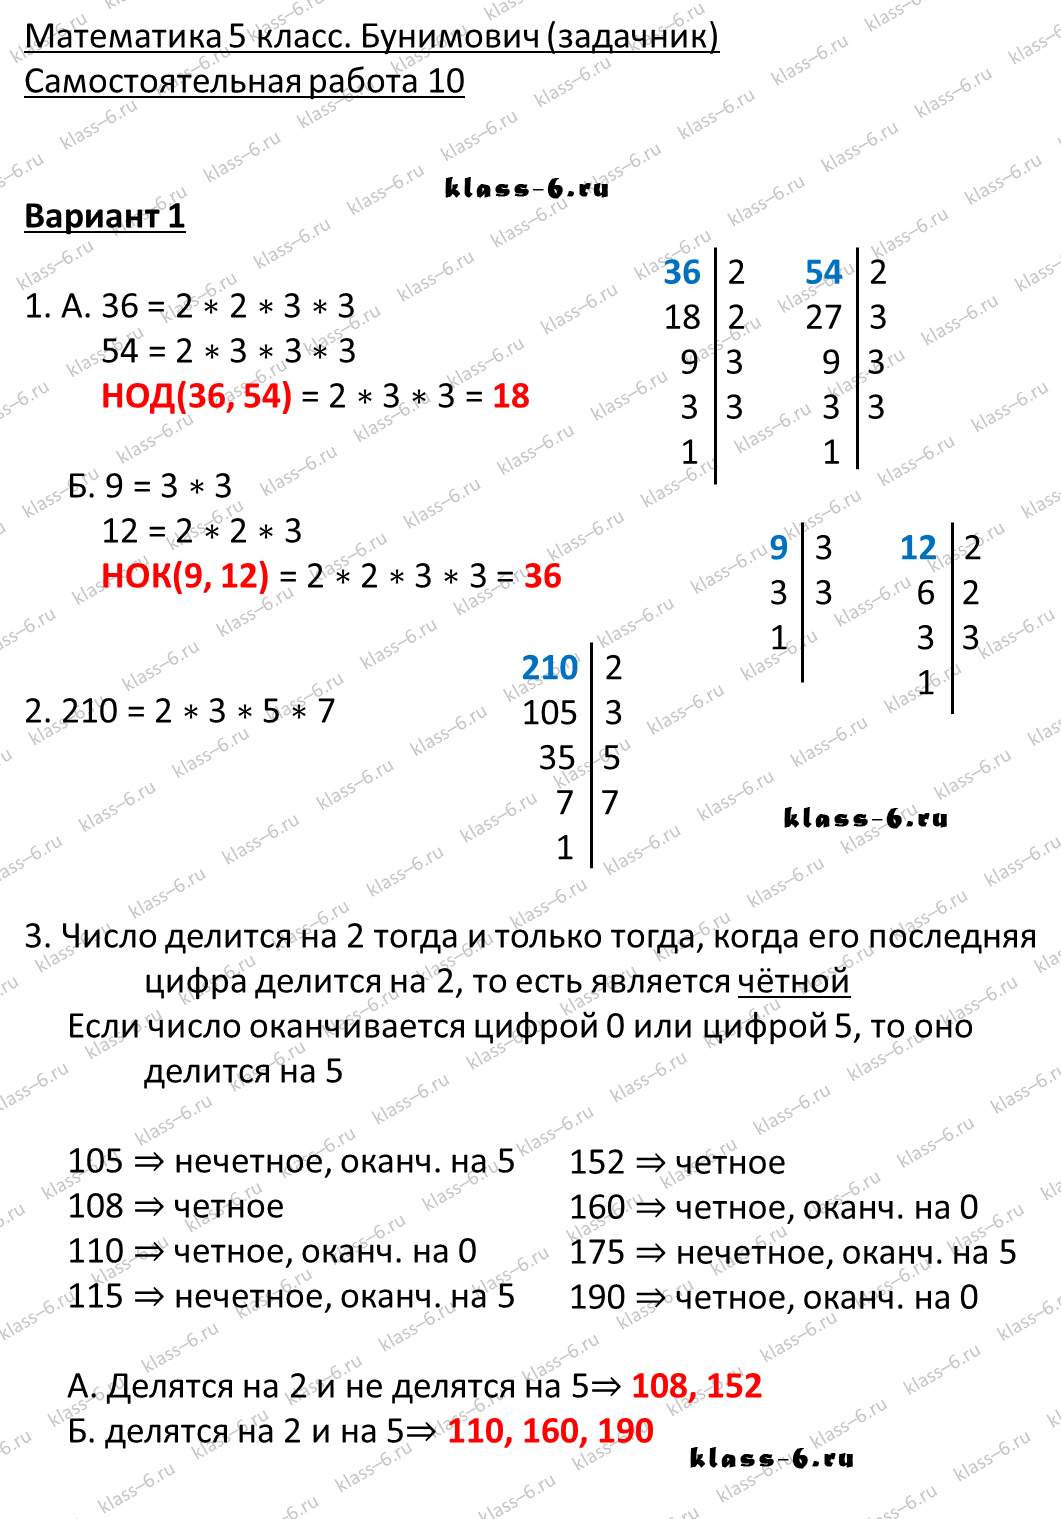 решебник и гдз по математике задачник Бунимович 5 класс самостоятельная работа 10-v1